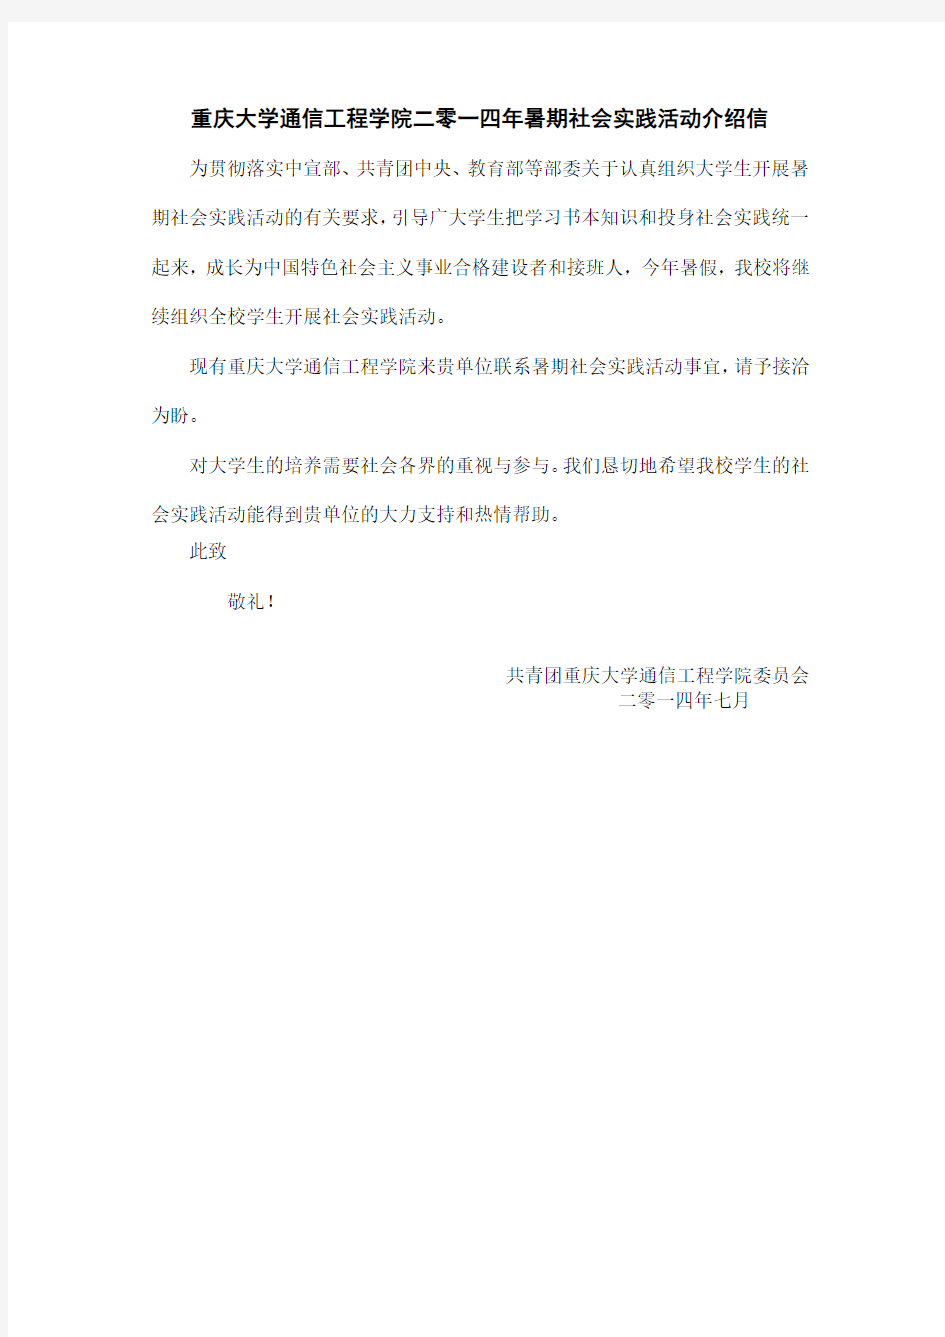 重庆大学通信工程学院暑期社会实践介绍信